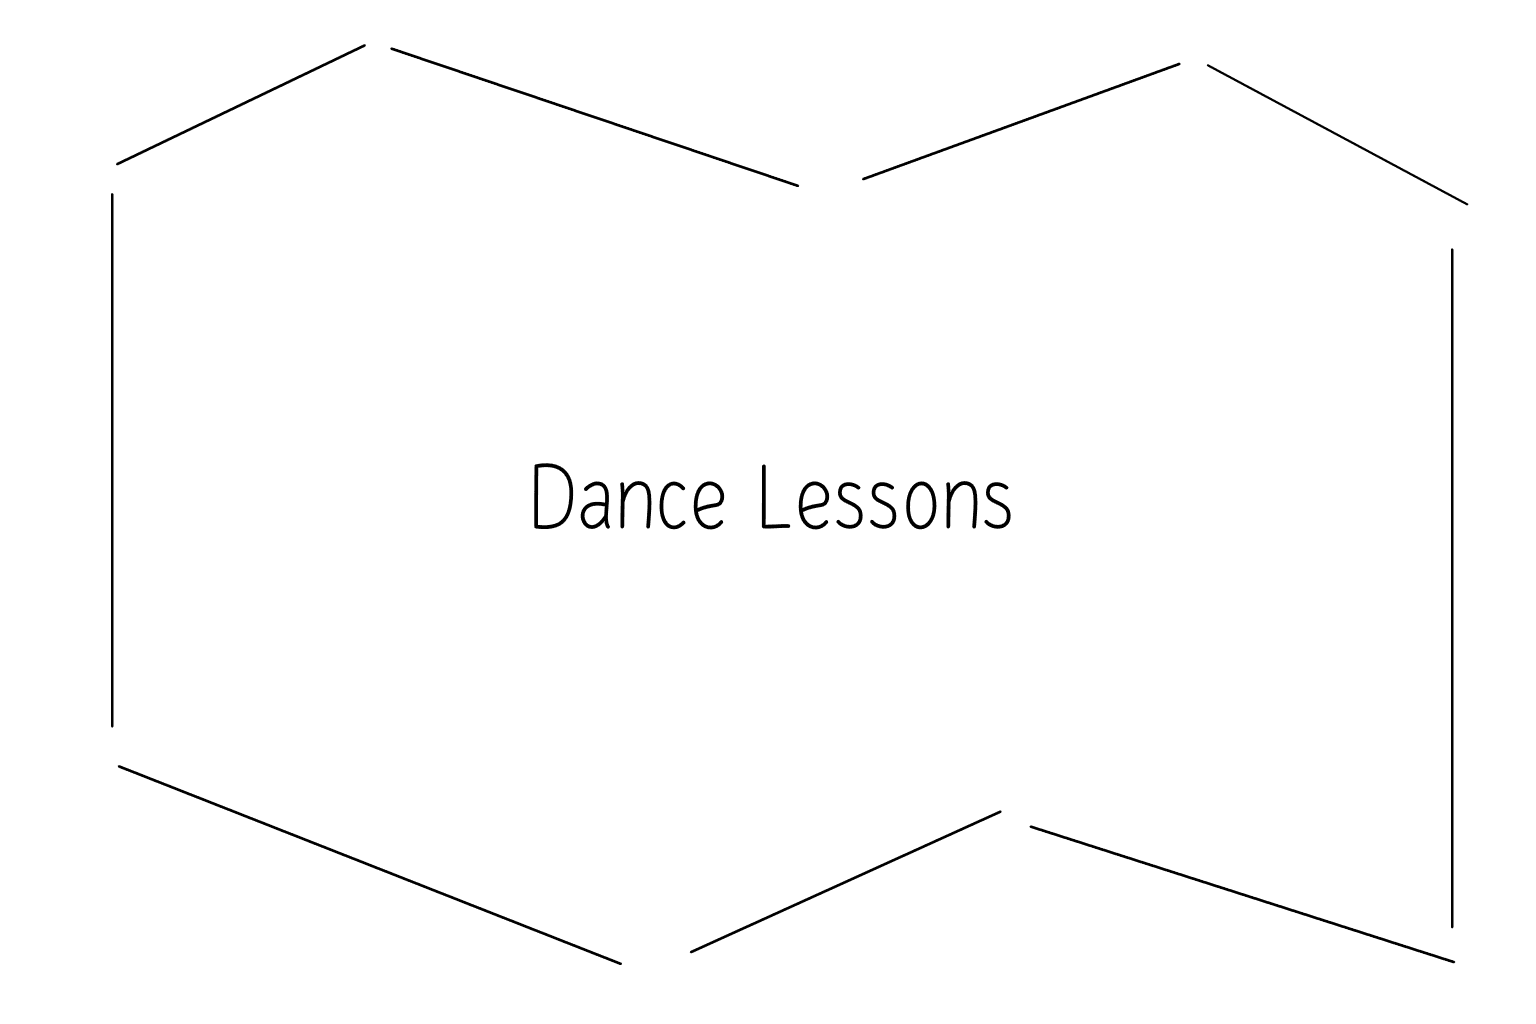 Ilustración de clases de baile para bodas